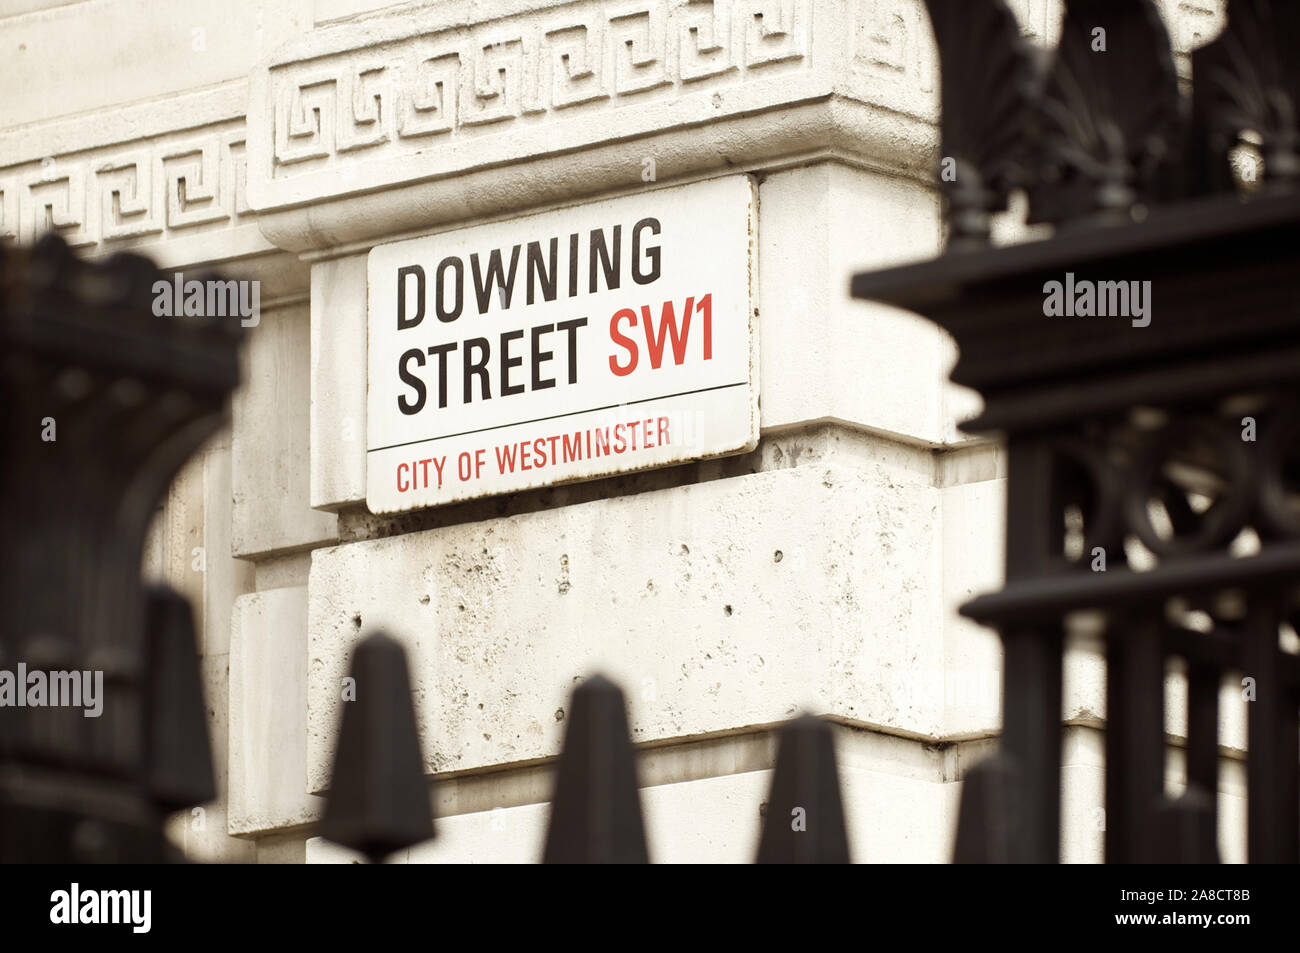 Londra - Giugno 2011: un cartello stradale per Downing Street, dove la residenza del Primo ministro è situato in un palazzo di Westminster. Foto Stock